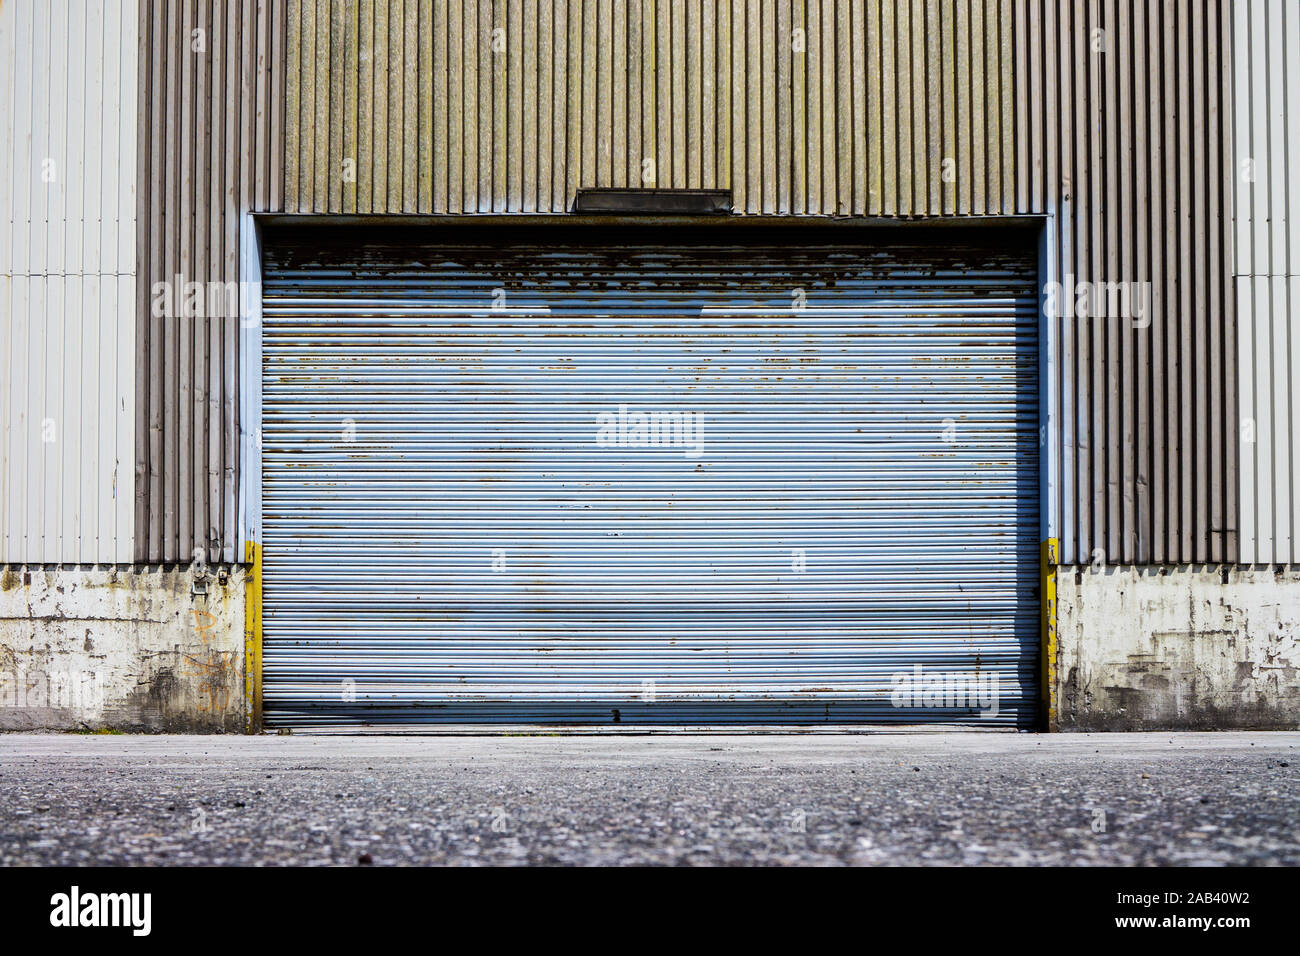 Ein geschlossenes Rolltor von einem altem Lagerhaus im Hafen |A closed shutter door of a warehouse in the port| Stock Photo